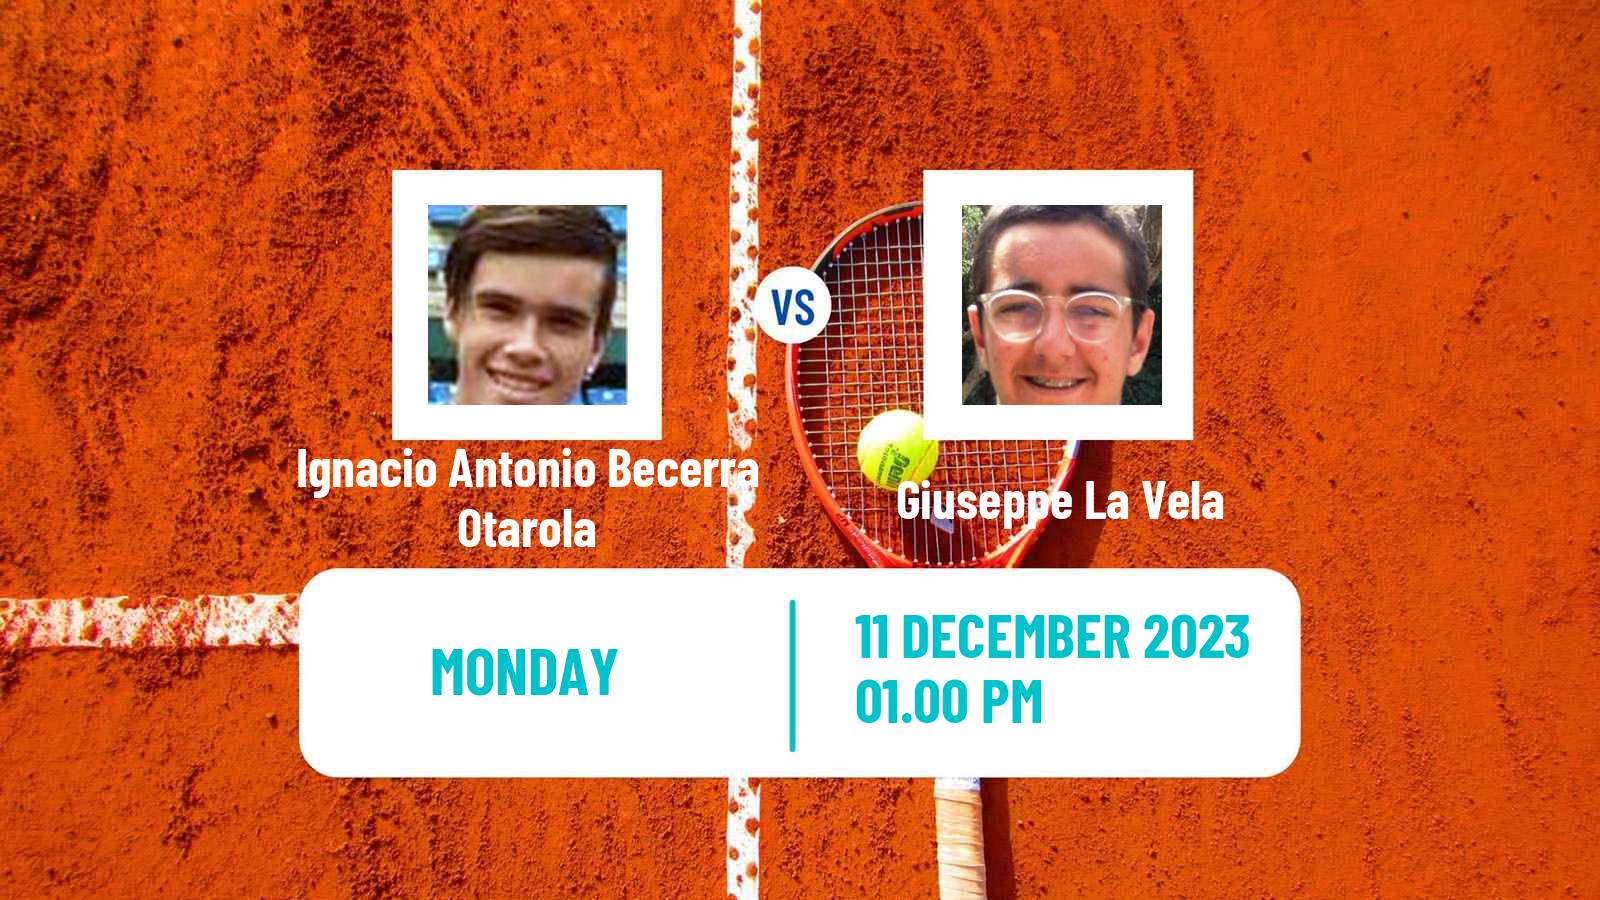 Tennis ITF M15 Concepcion 2 Men Ignacio Antonio Becerra Otarola - Giuseppe La Vela